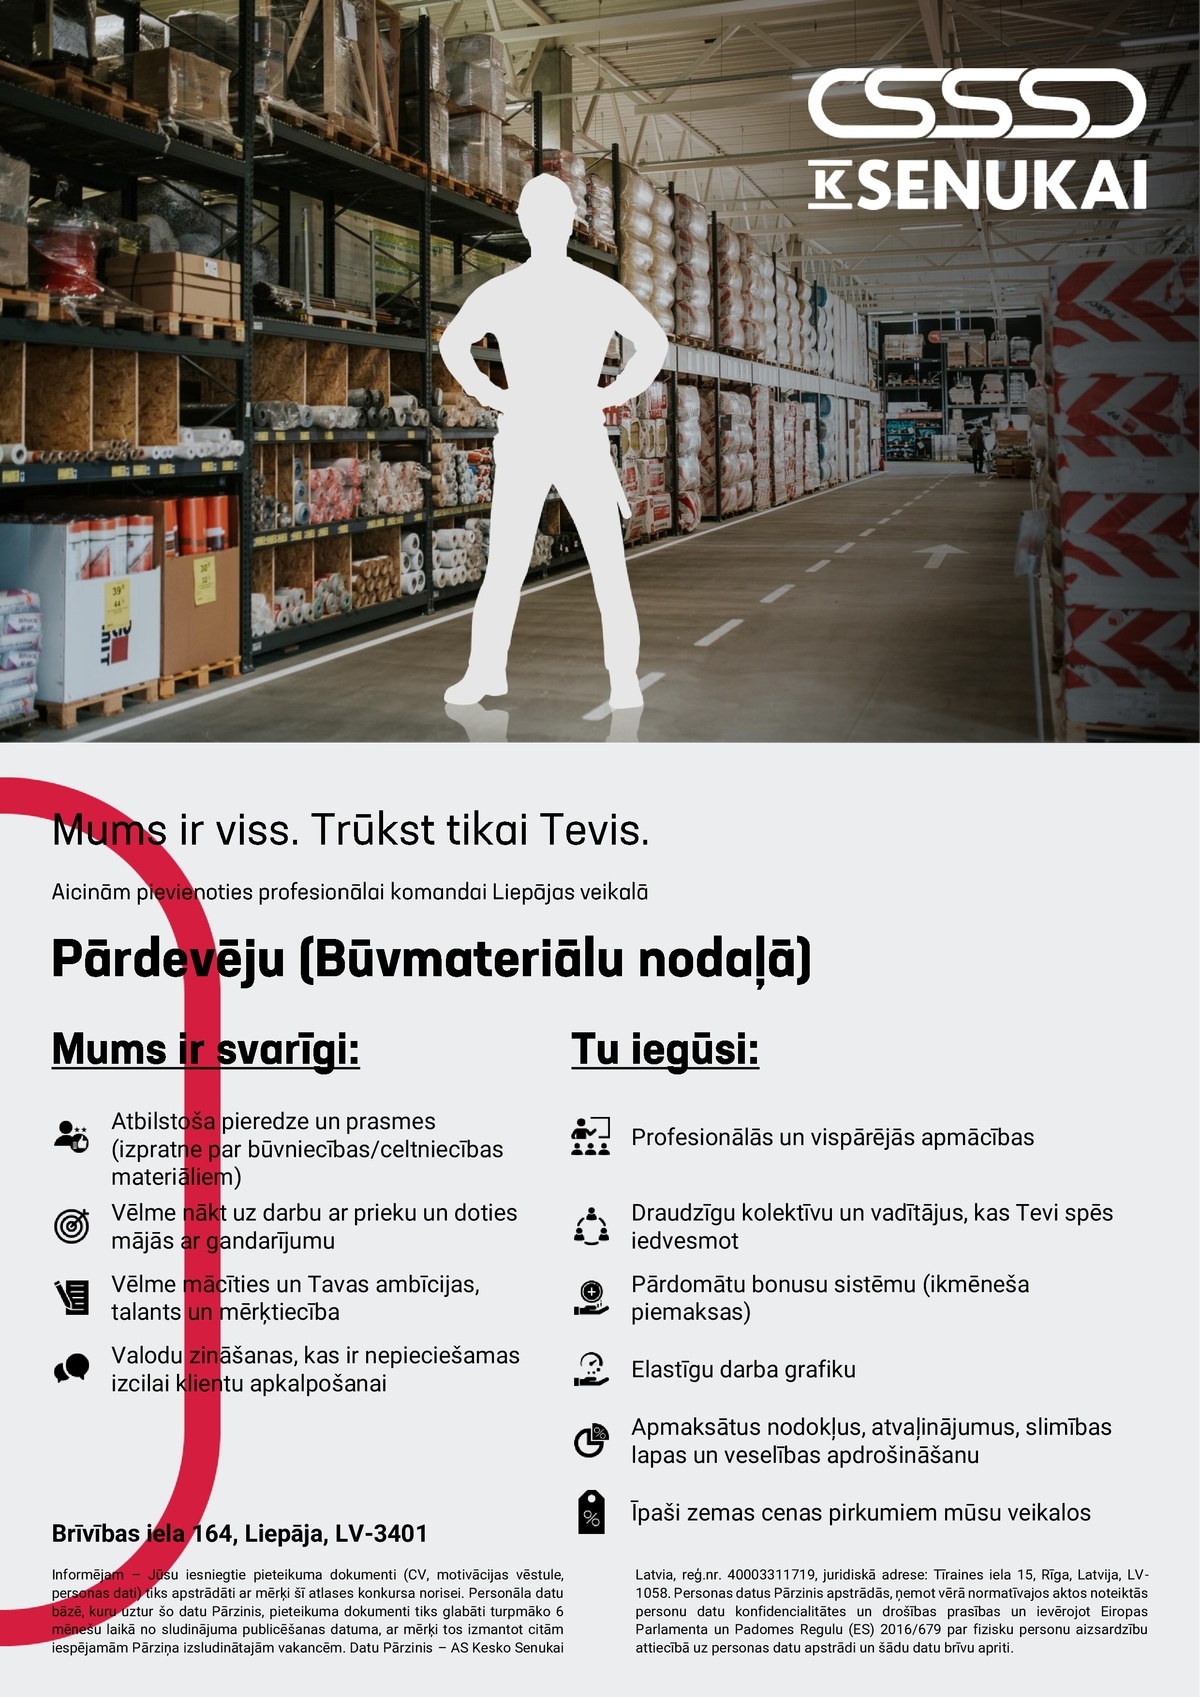 Kesko Senukai Latvia, AS Pārdevējs/-a (Būvmateriālu nodaļā) Liepājas veikalā